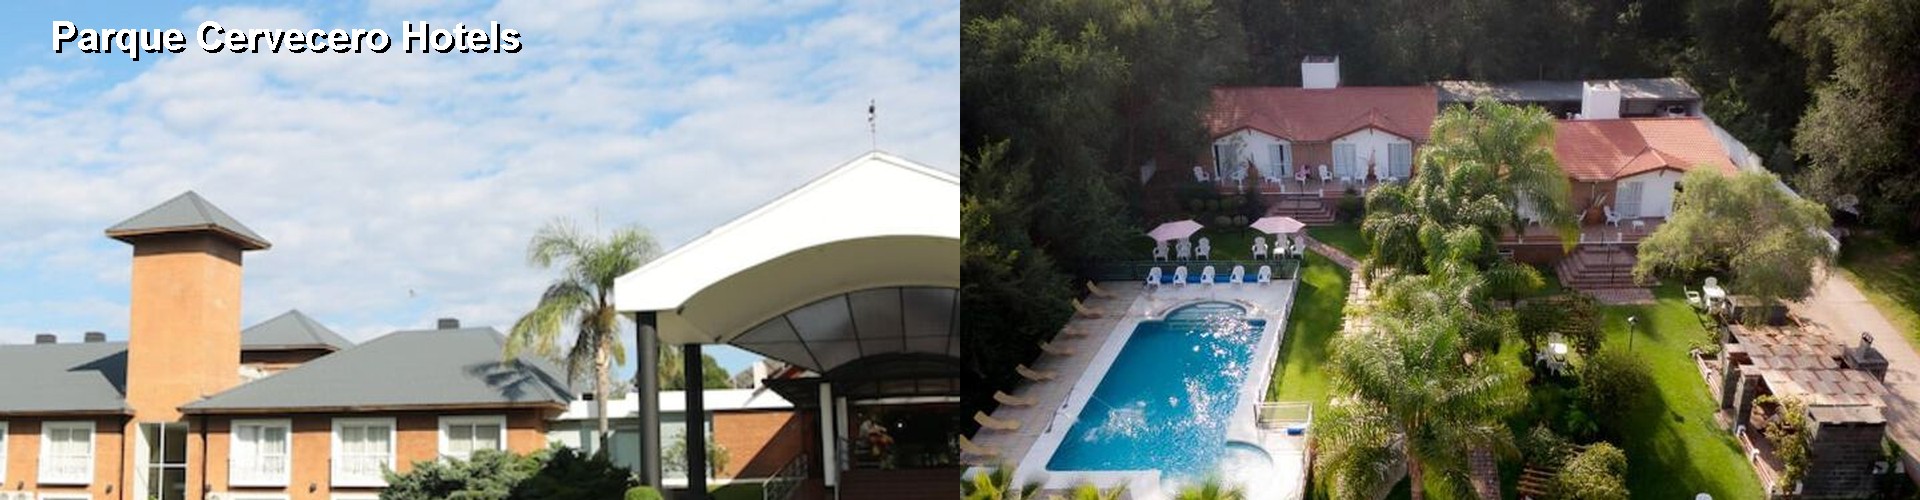 3 Best Hotels near Parque Cervecero